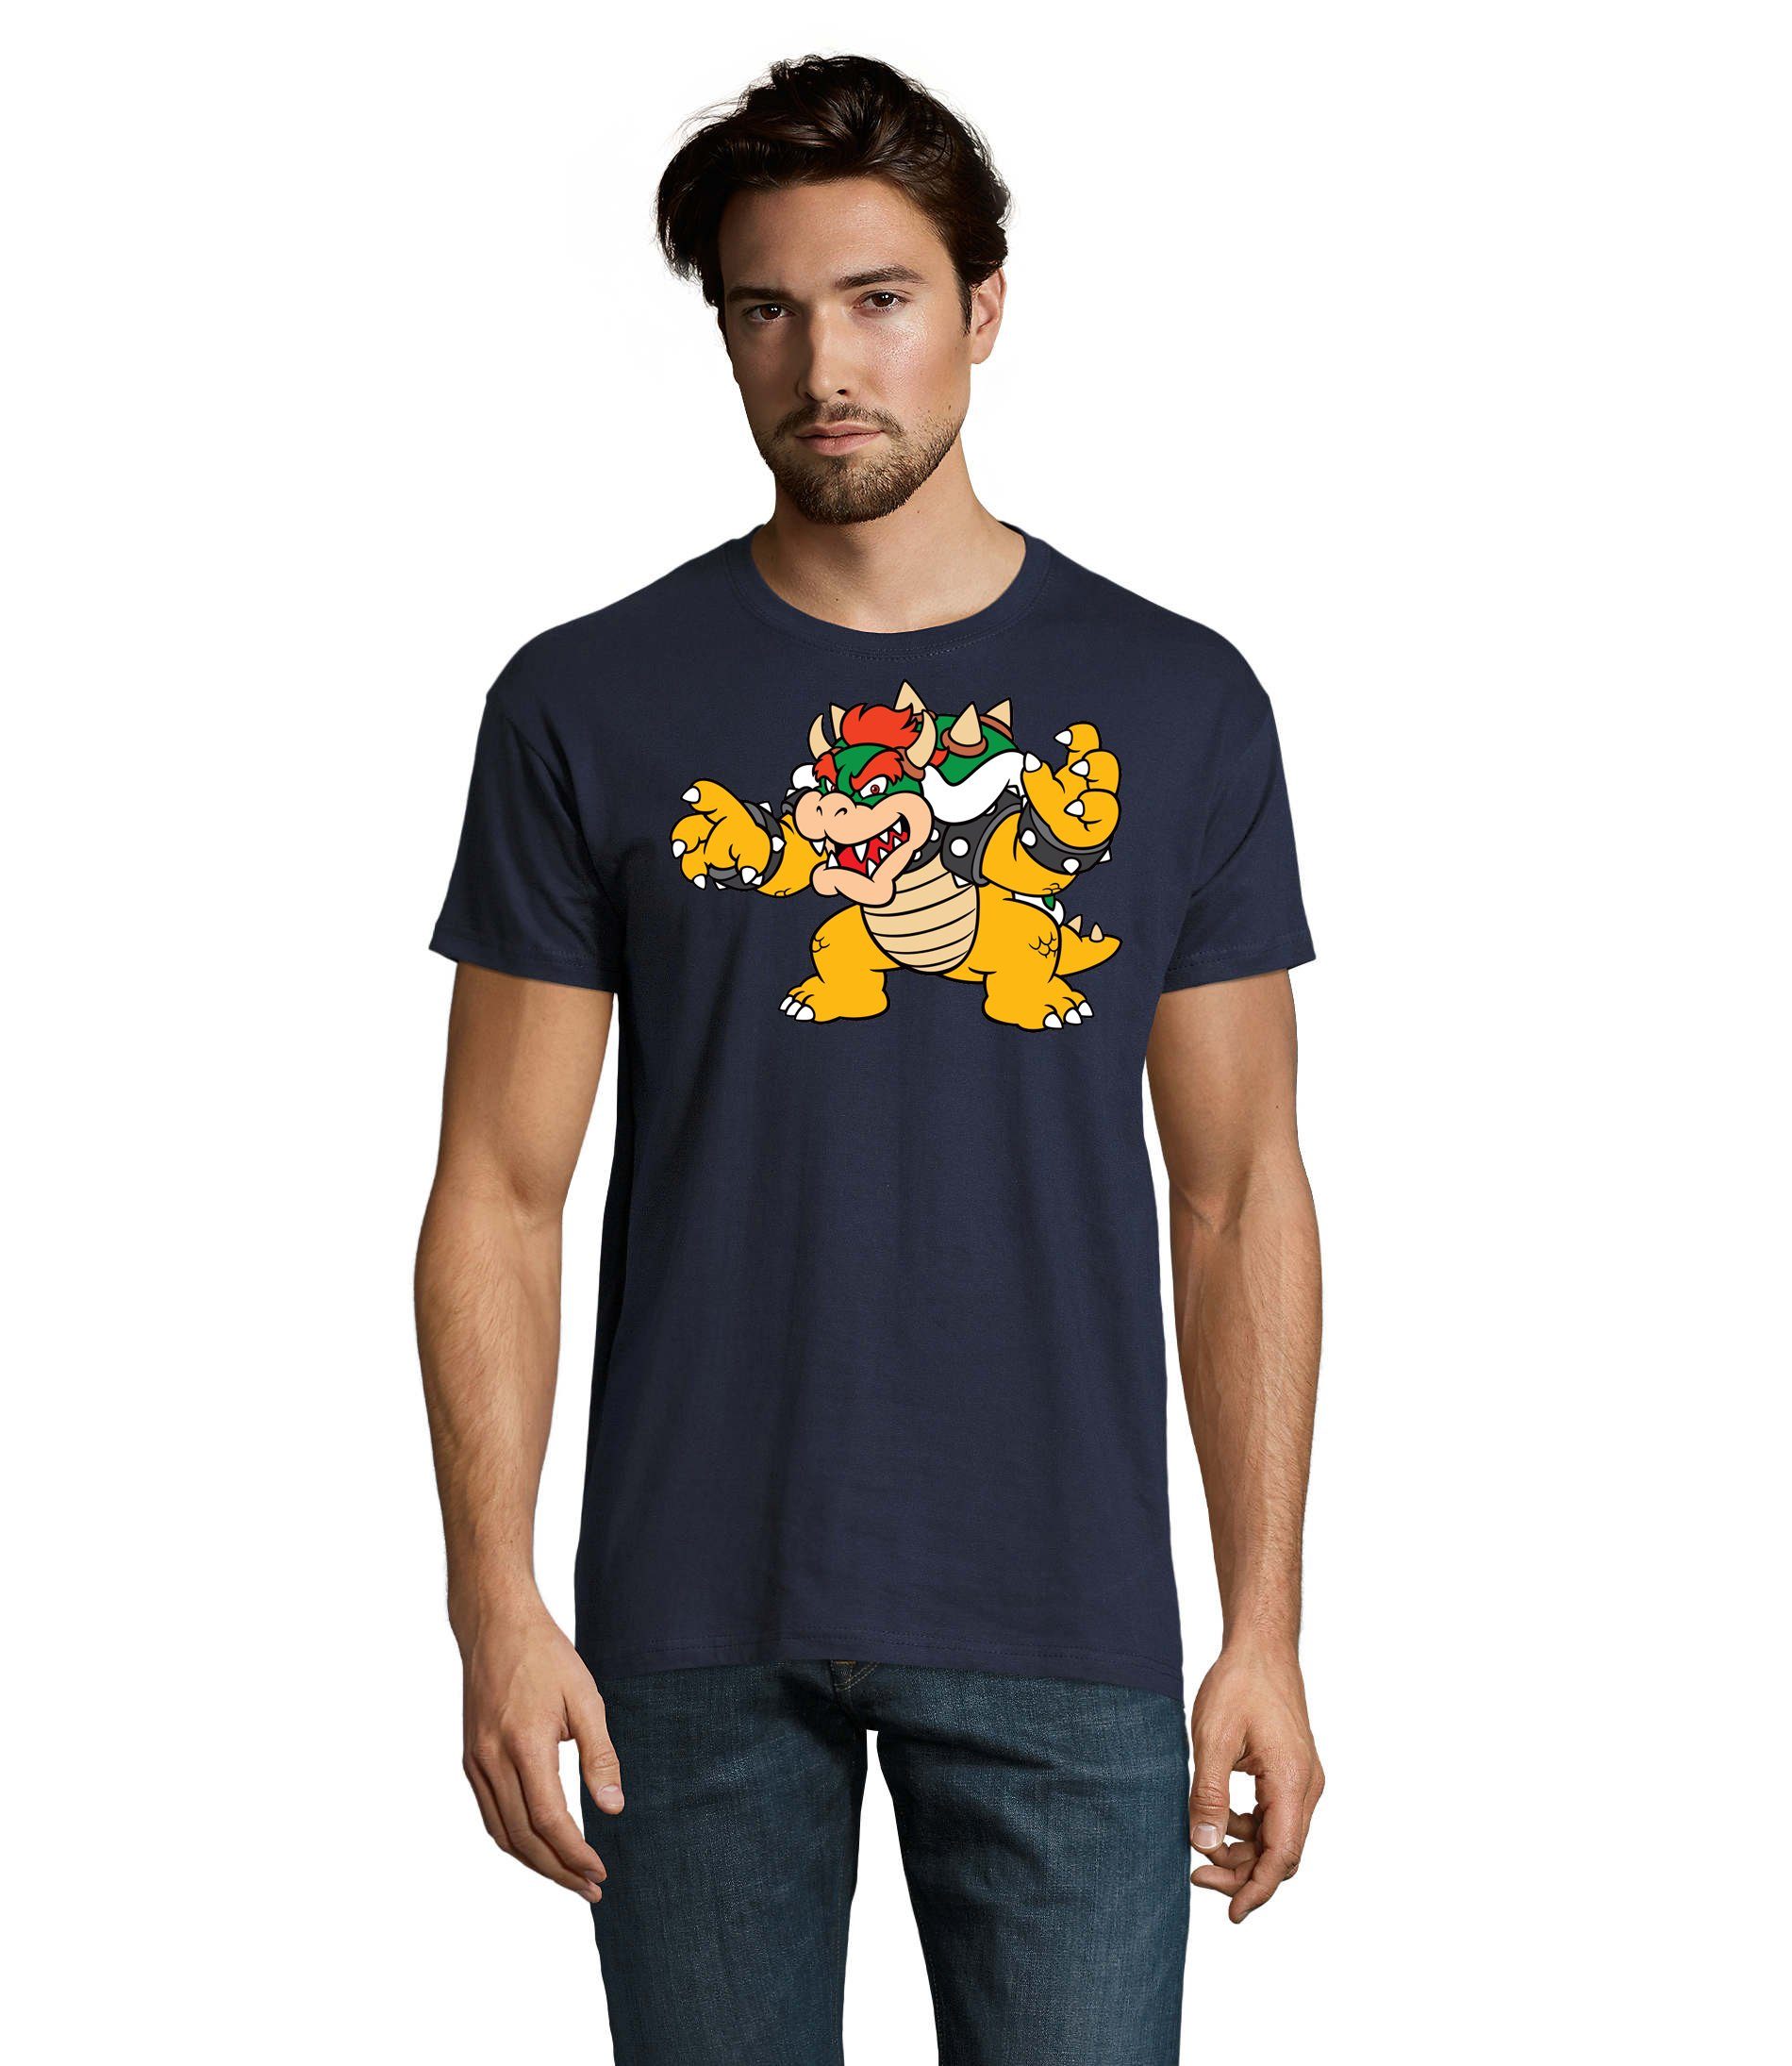 Mario Gaming T-Shirt Navyblau Herren Nintendo Konsole Game Blondie Gamer Yoshi & Brownie Luigi